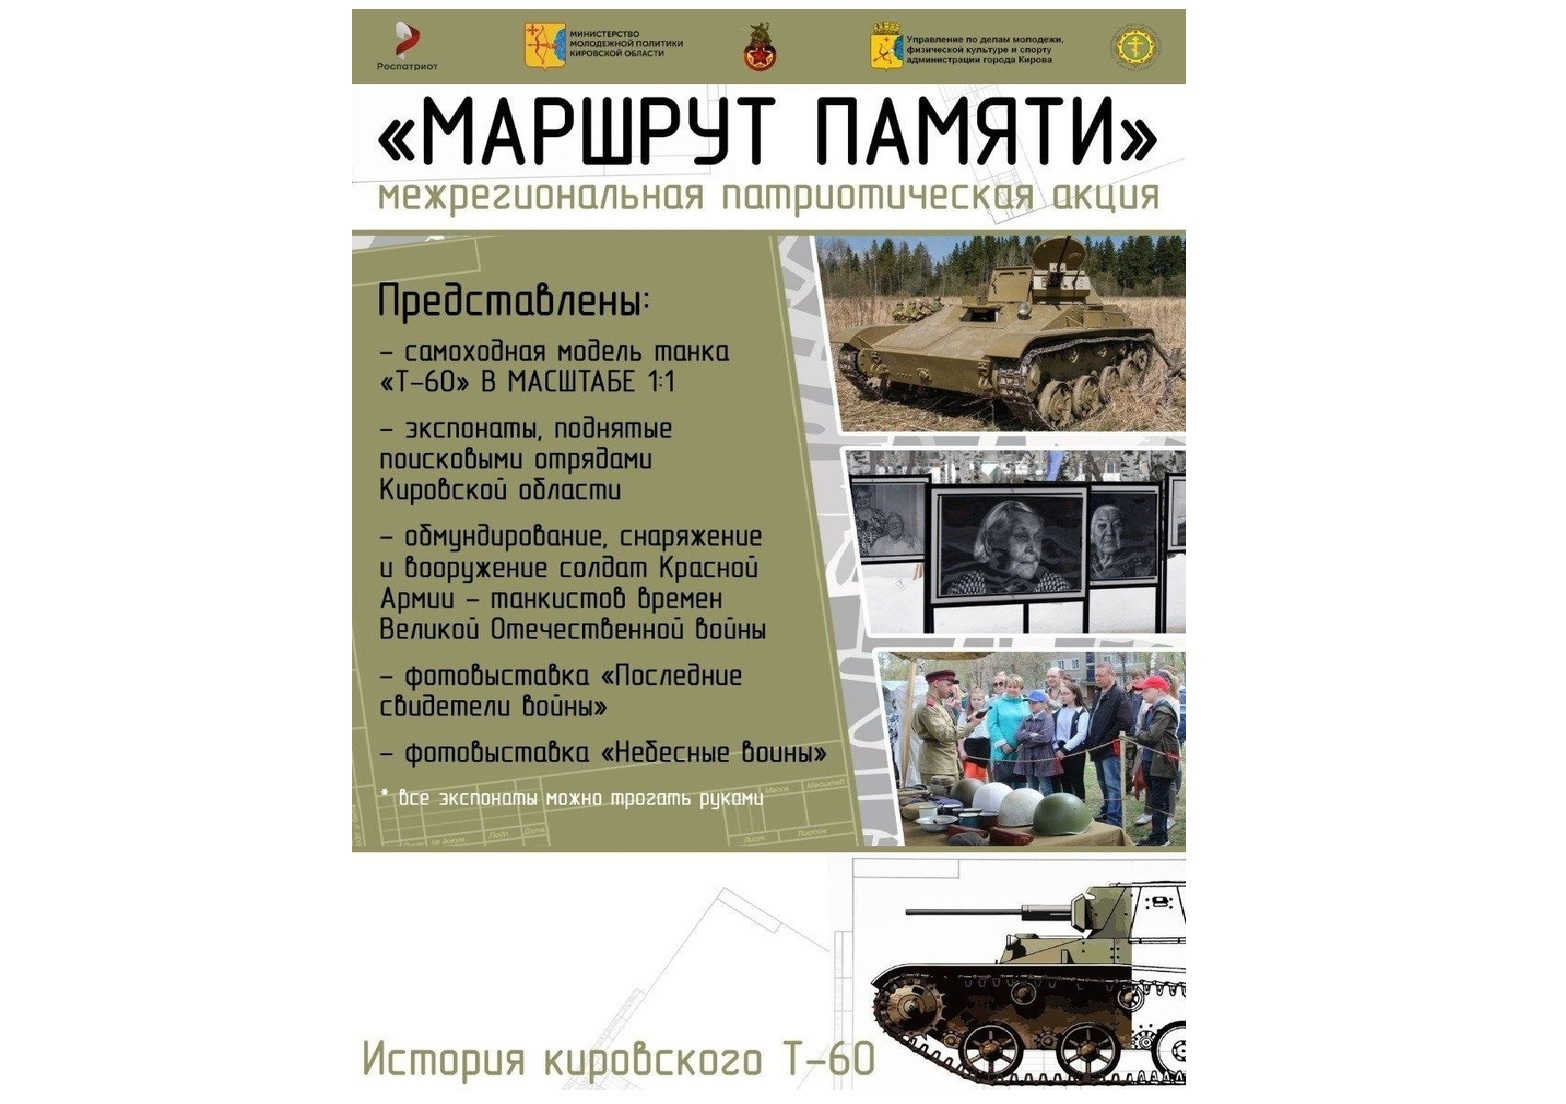 Жители Йошкар-Олы смогут увидеть легендарный Кировский танк Т-60 